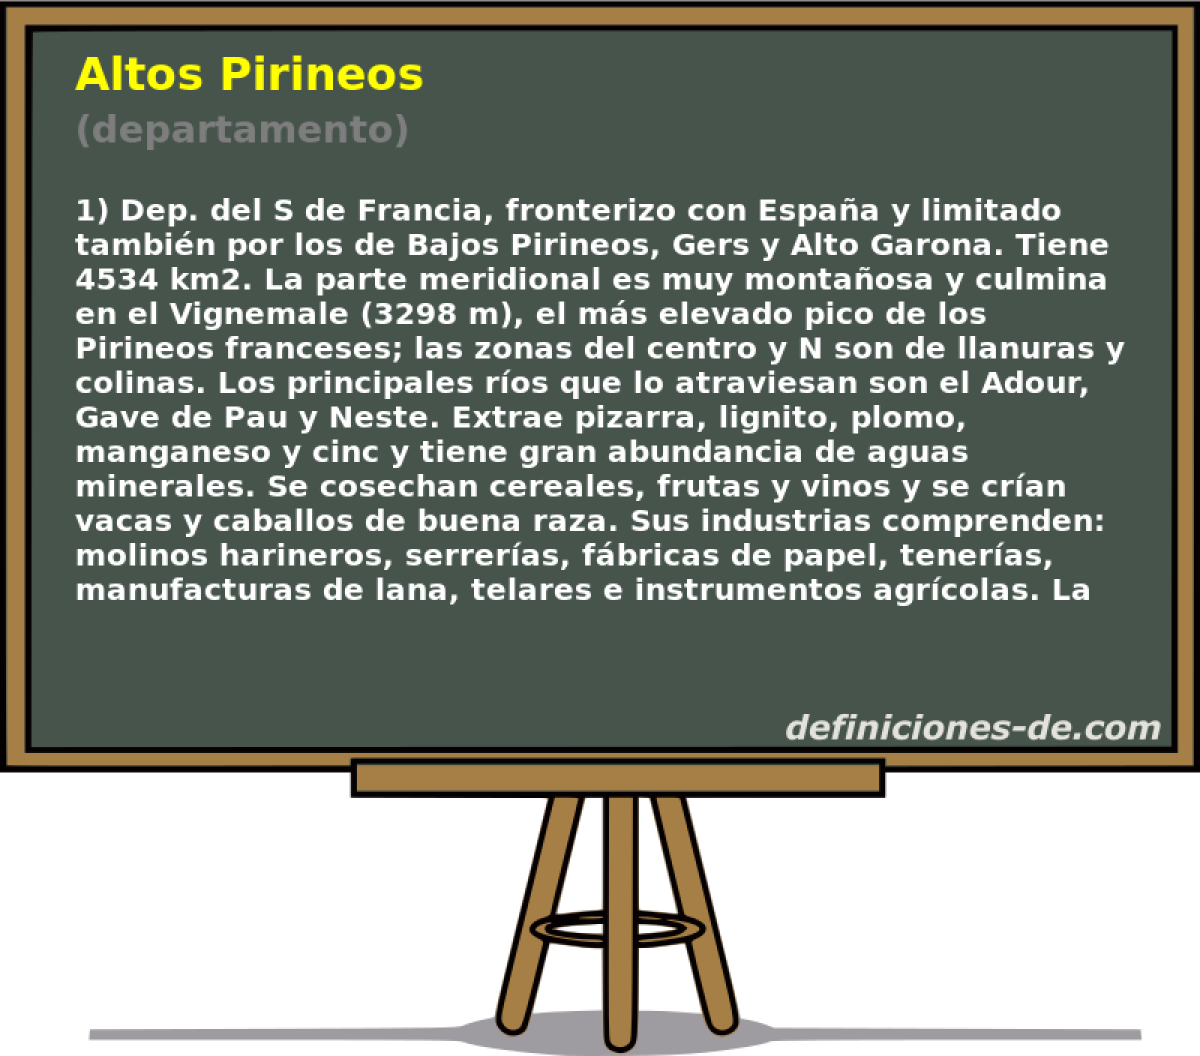 Altos Pirineos (departamento)